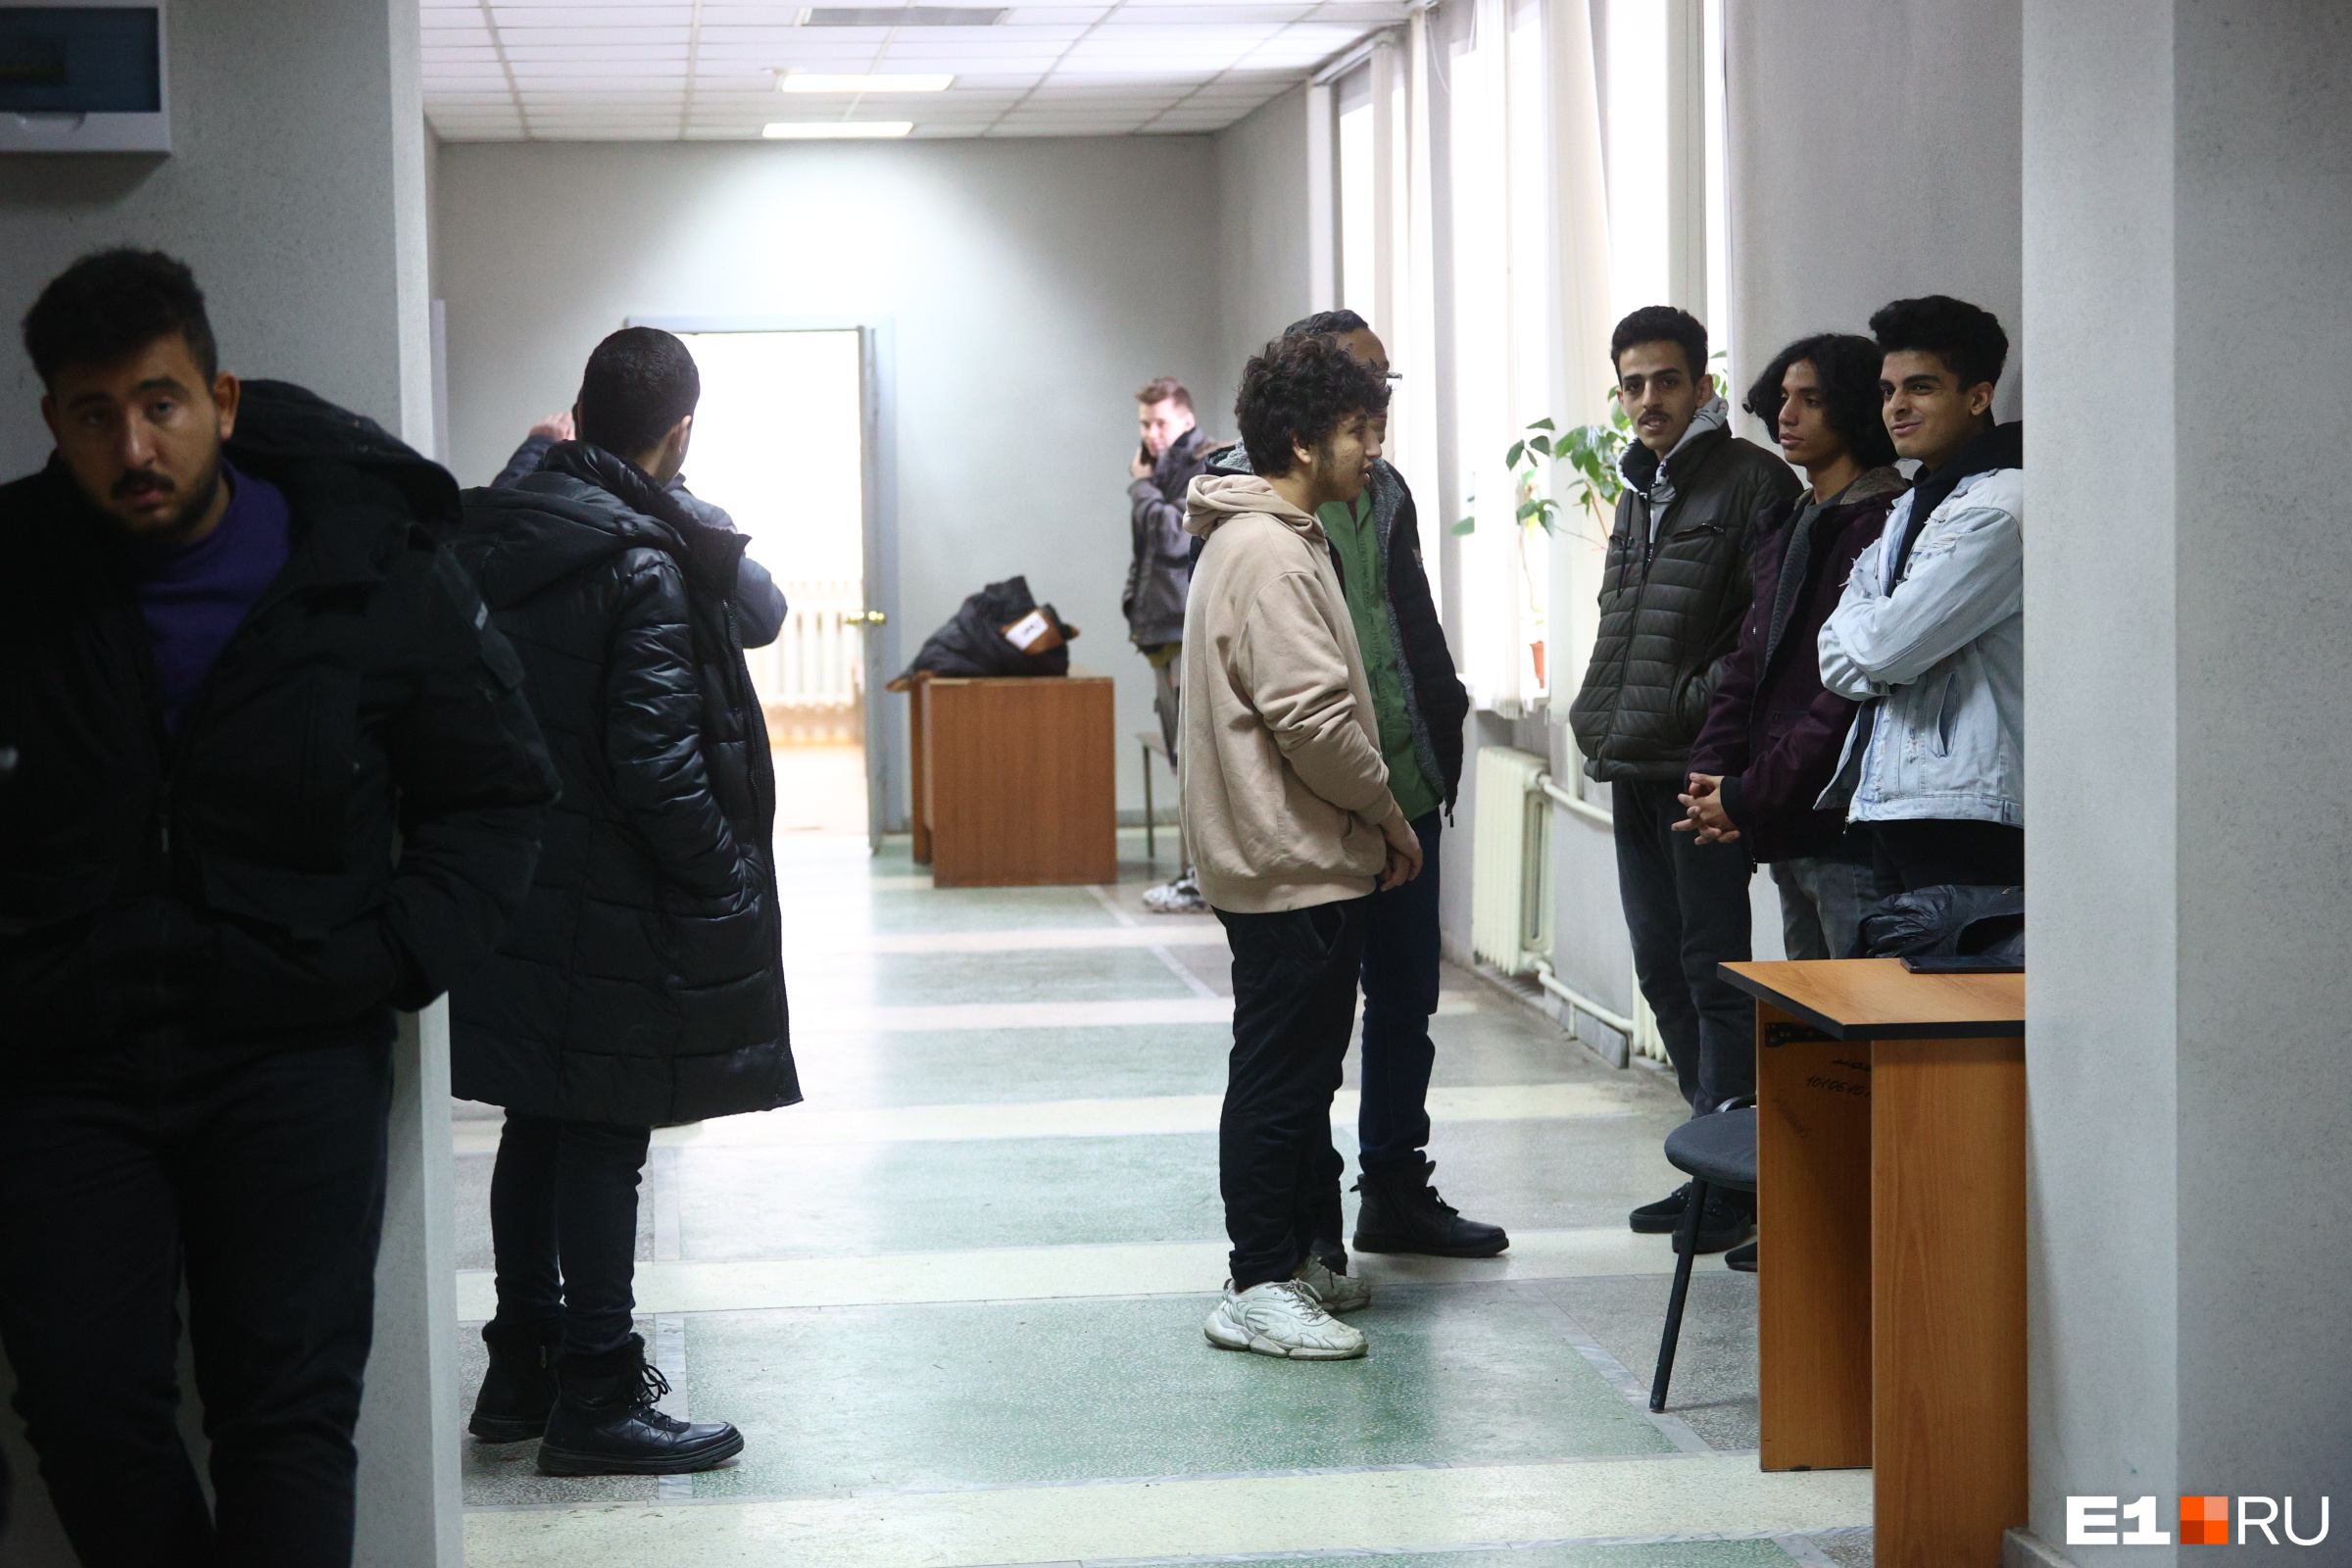 Всего в Ленинском районном суде собрались десять студентов — всех их обвиняли по статье «Мелкое хулиганство»